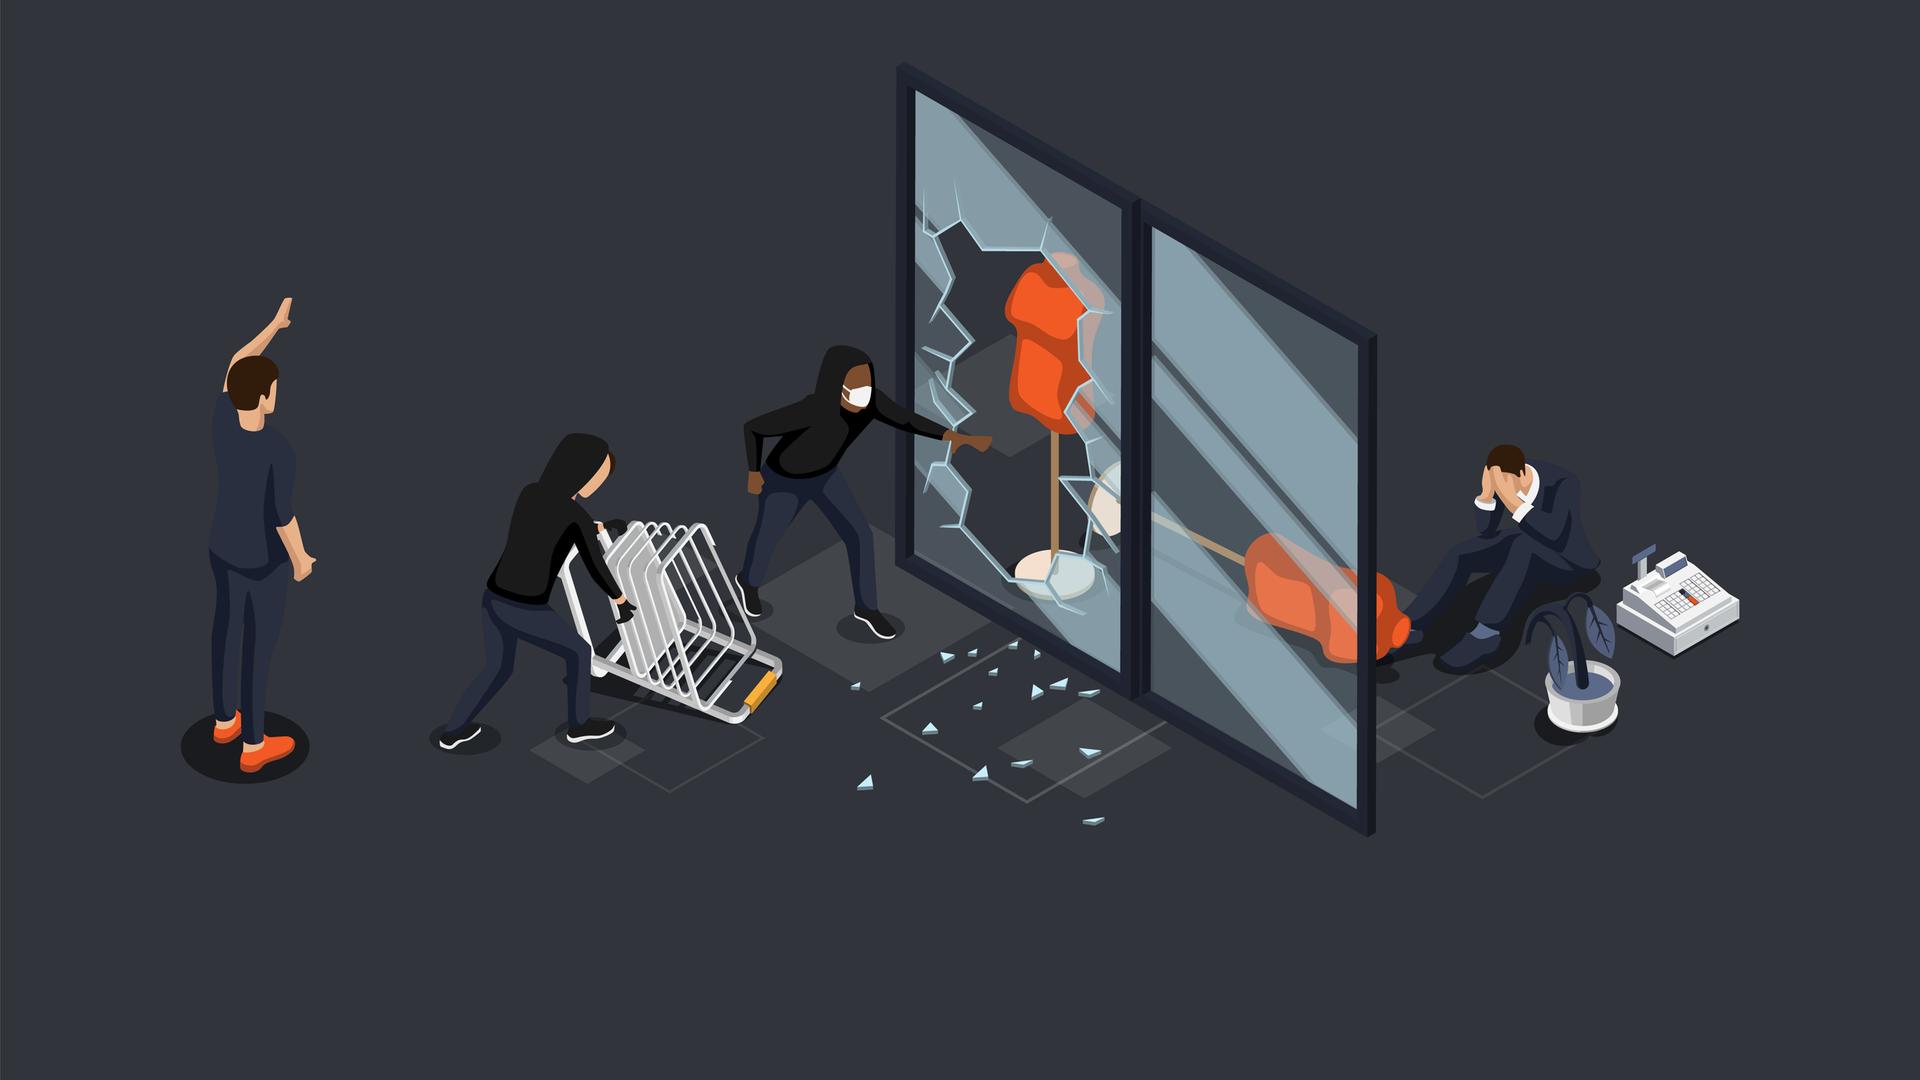 Eine Illustration von Jugendlichen, die eine Schaufensterscheibe eingeworfen haben und einem weinenden Ladenbesitzer.